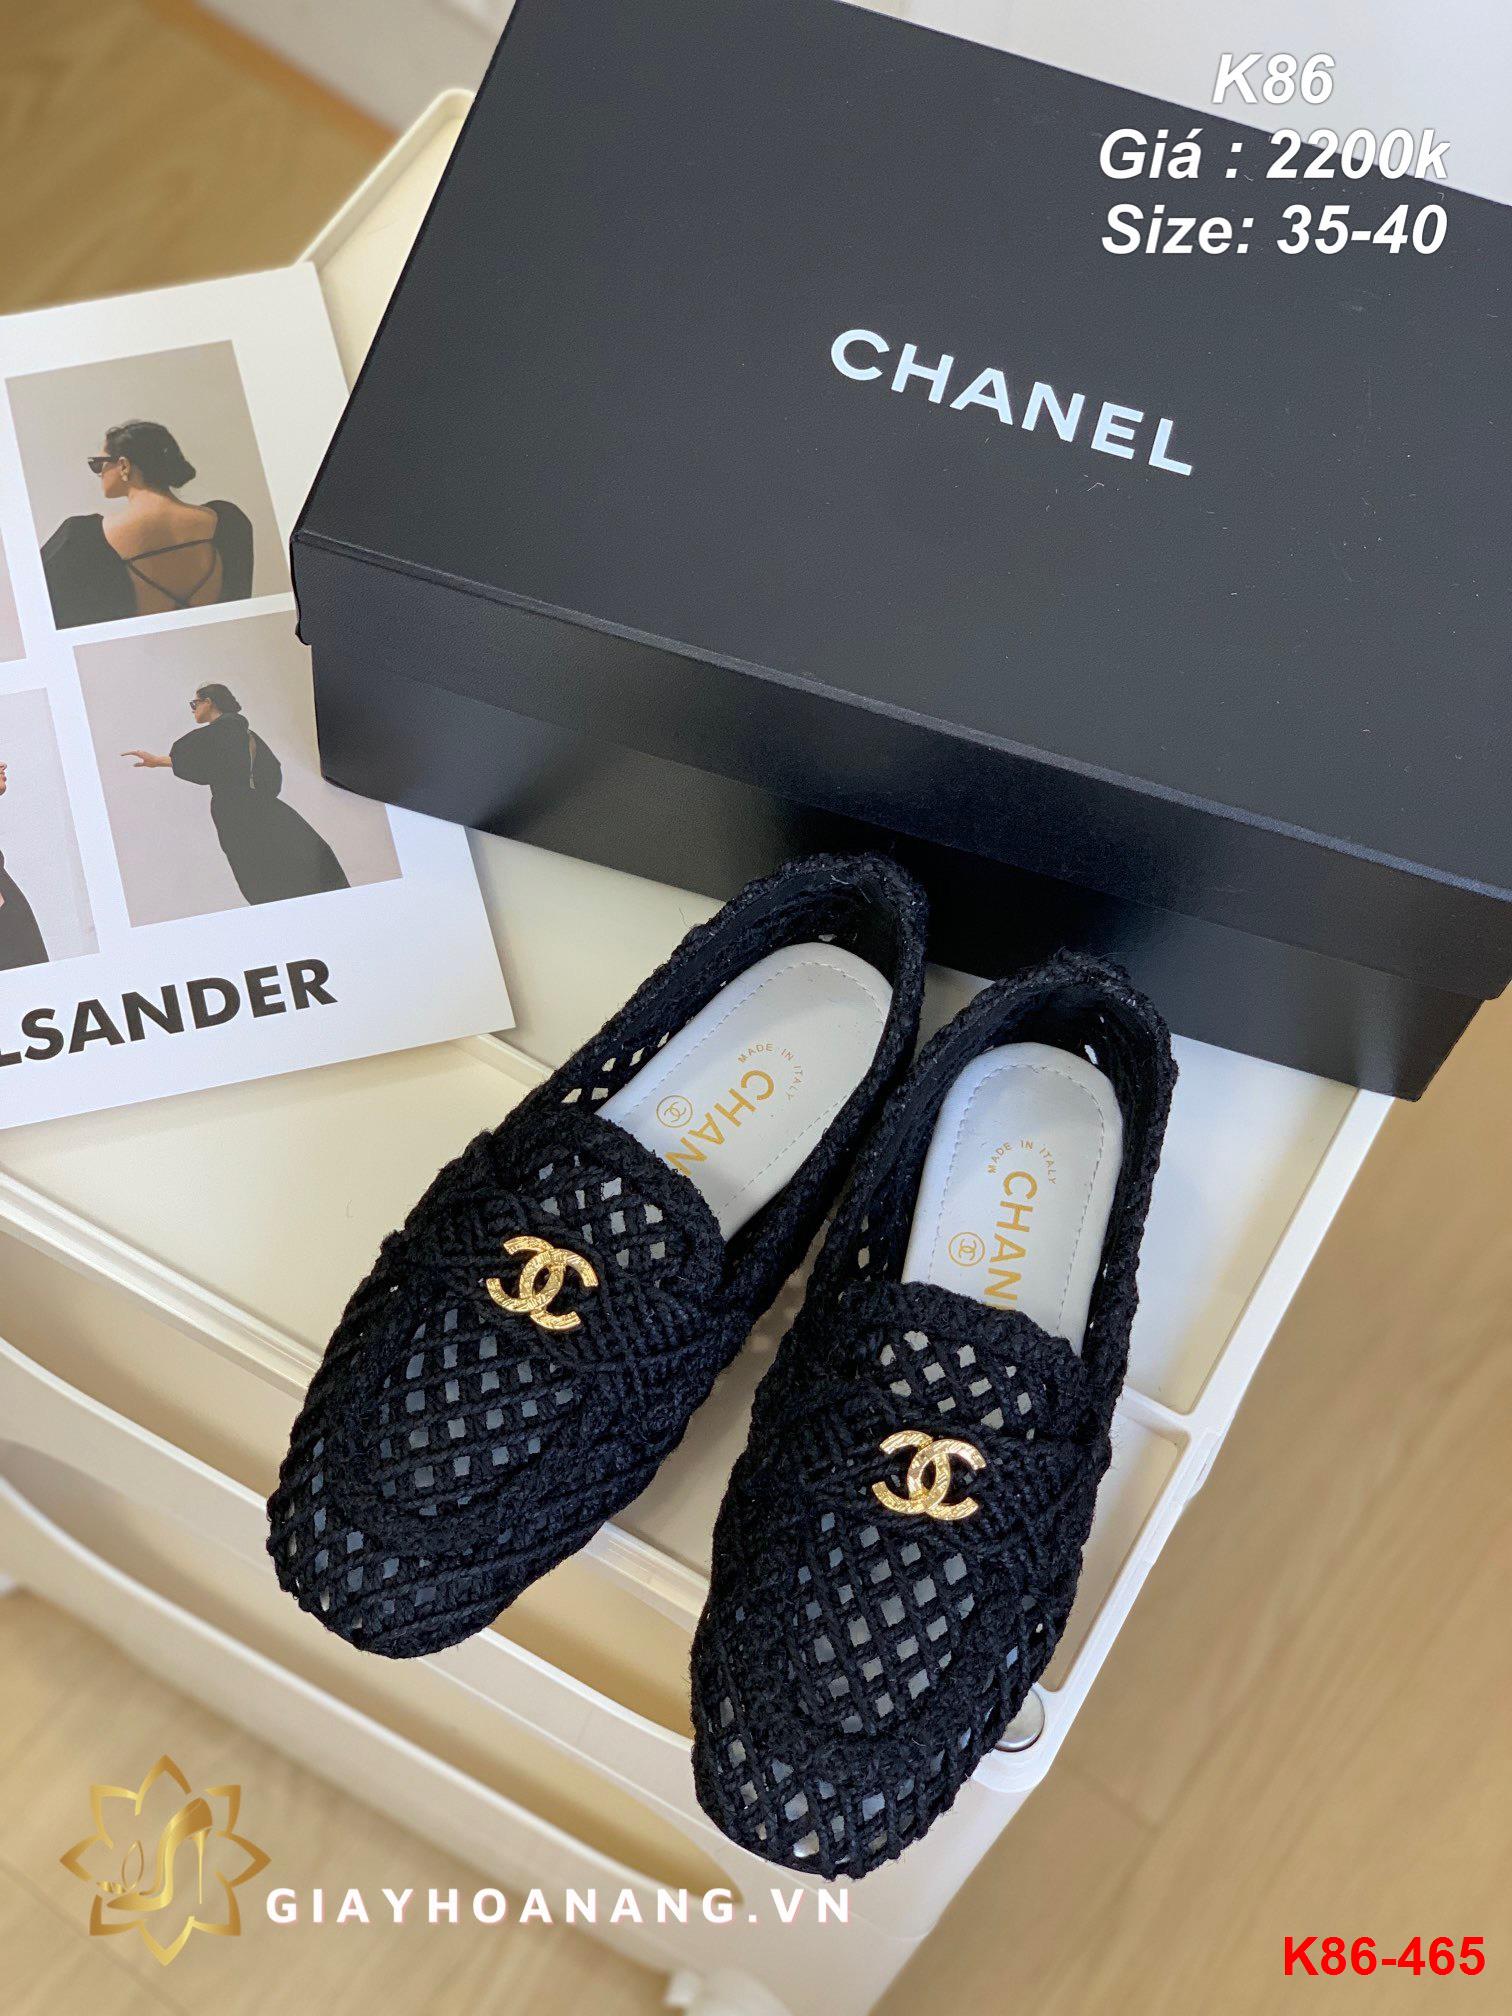 K86-465 Chanel giày lười siêu cấp